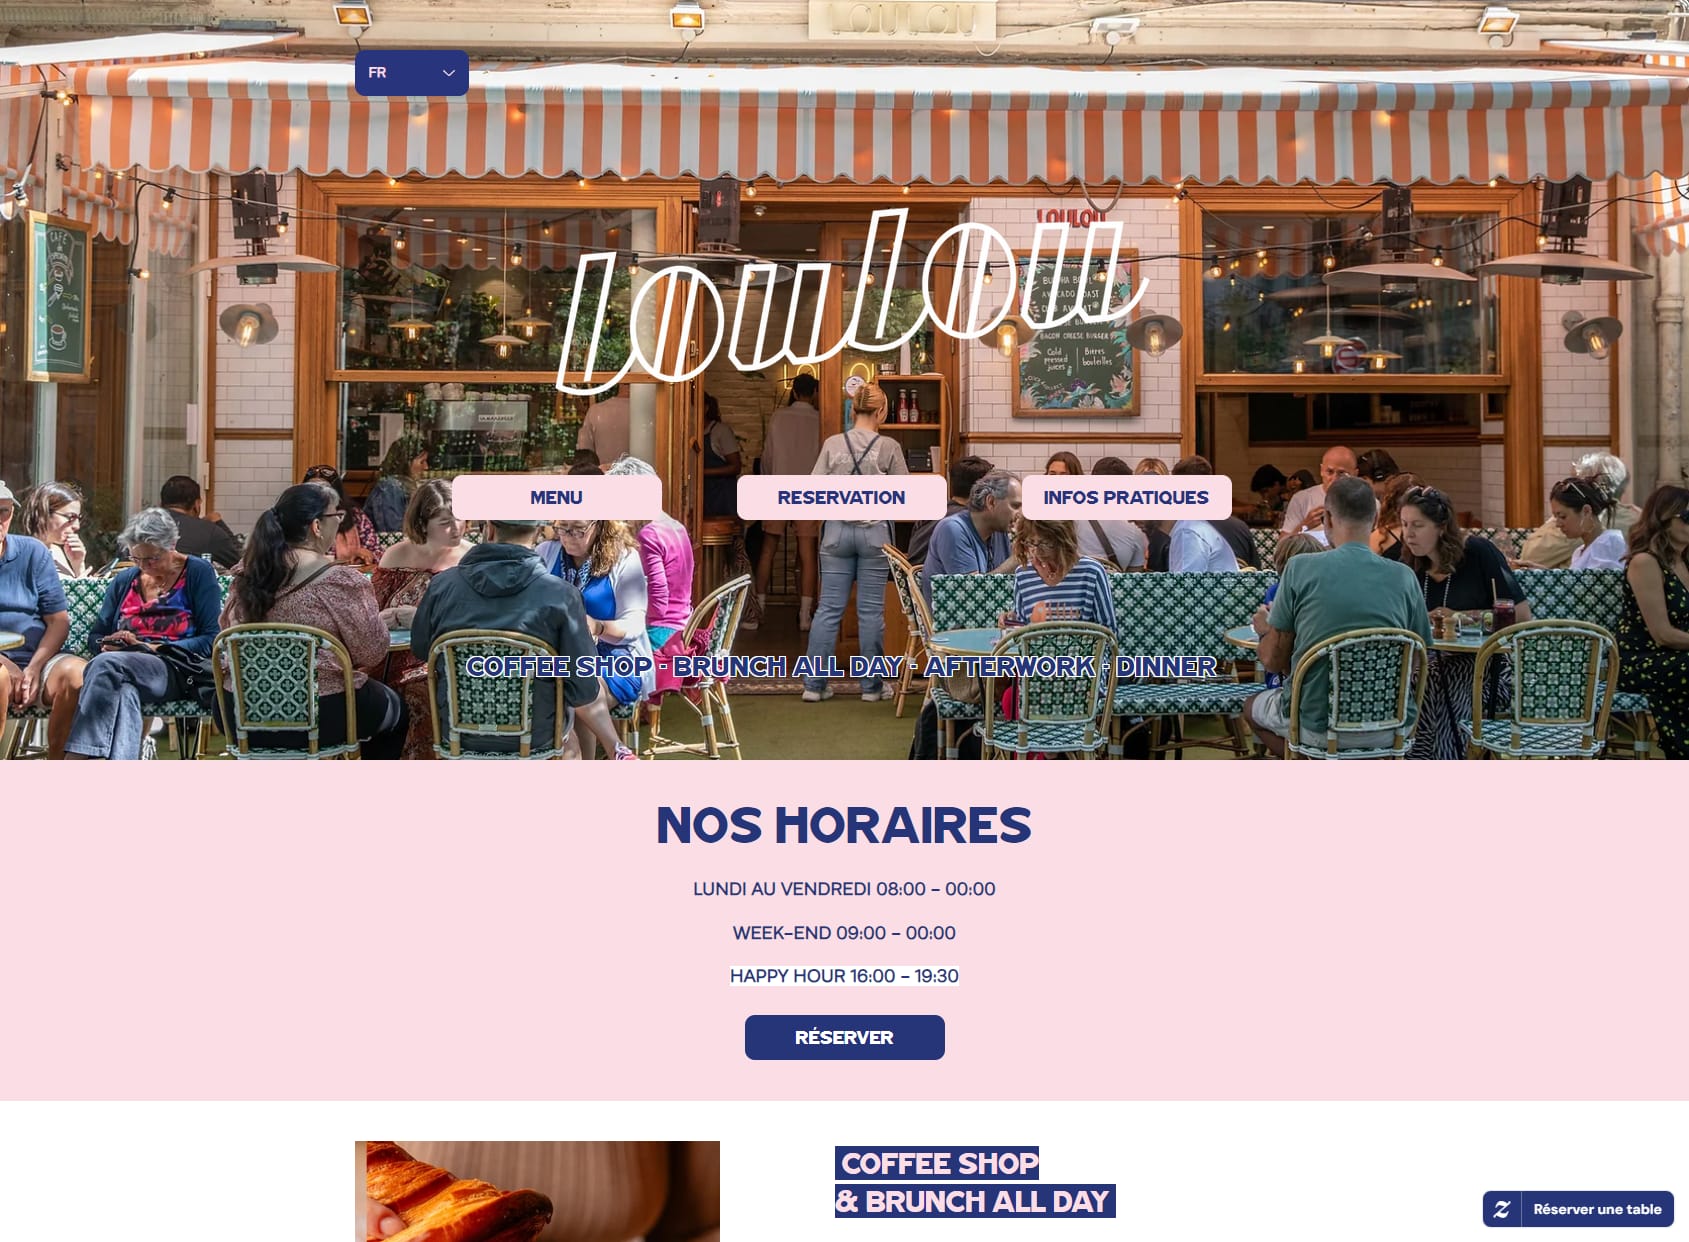 Restaurant Loulou Paris